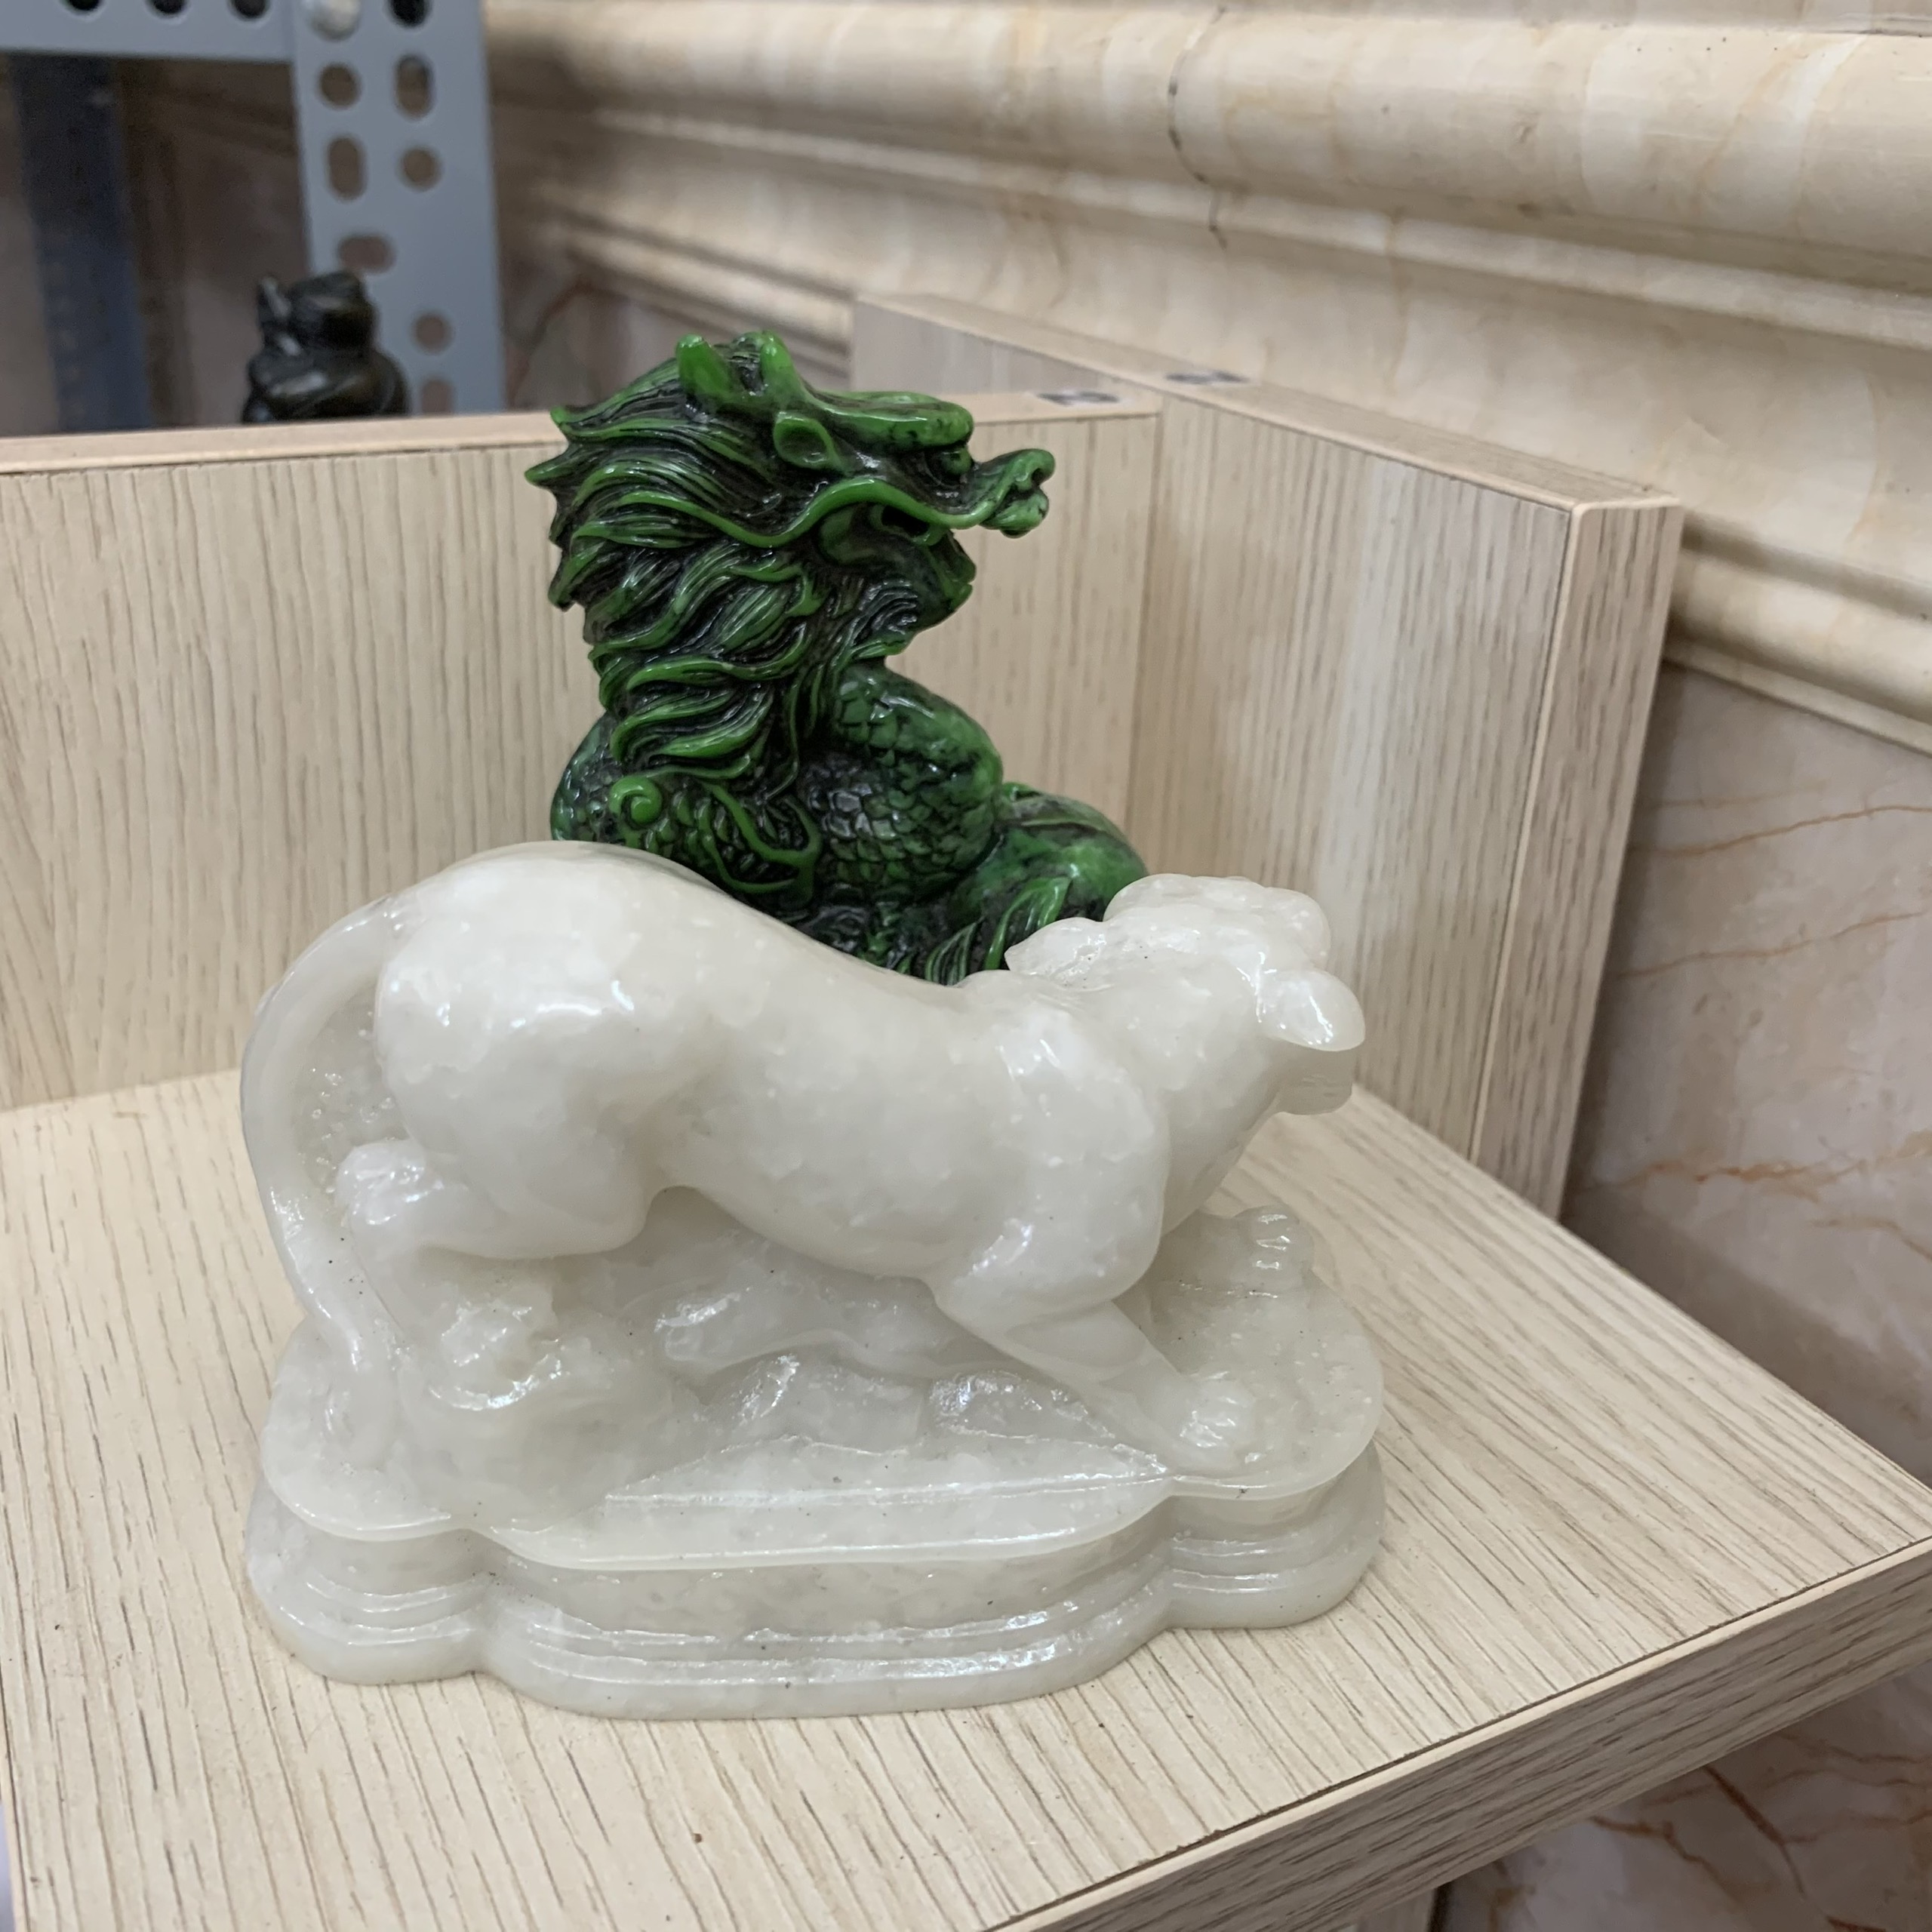 [Linh vật phong thủy] Combo 2 tượng đá trang trí phong thủy Thanh long - Bạch hổ | Size nhỏ để bàn làm việc